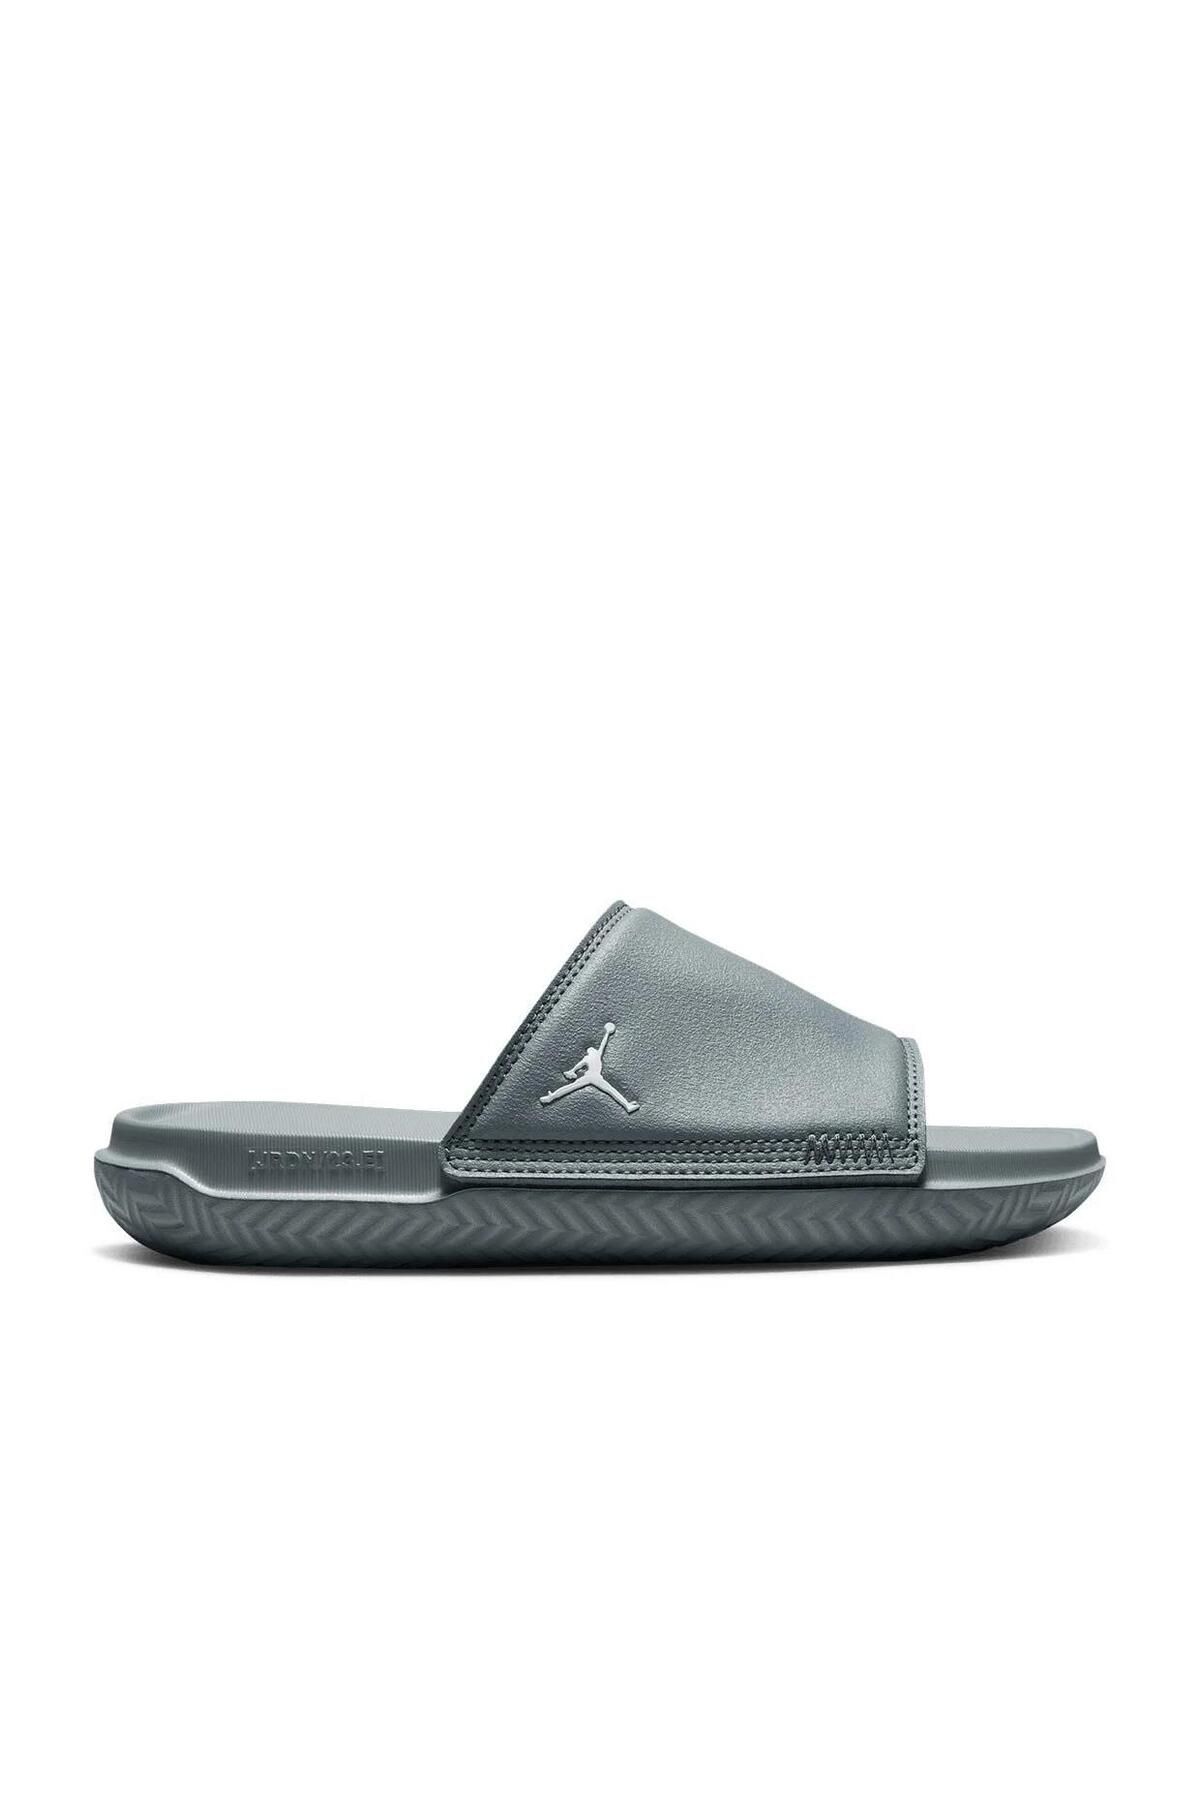 Nike Jordan Play Slıde Unısex Terlik-dn3596-001